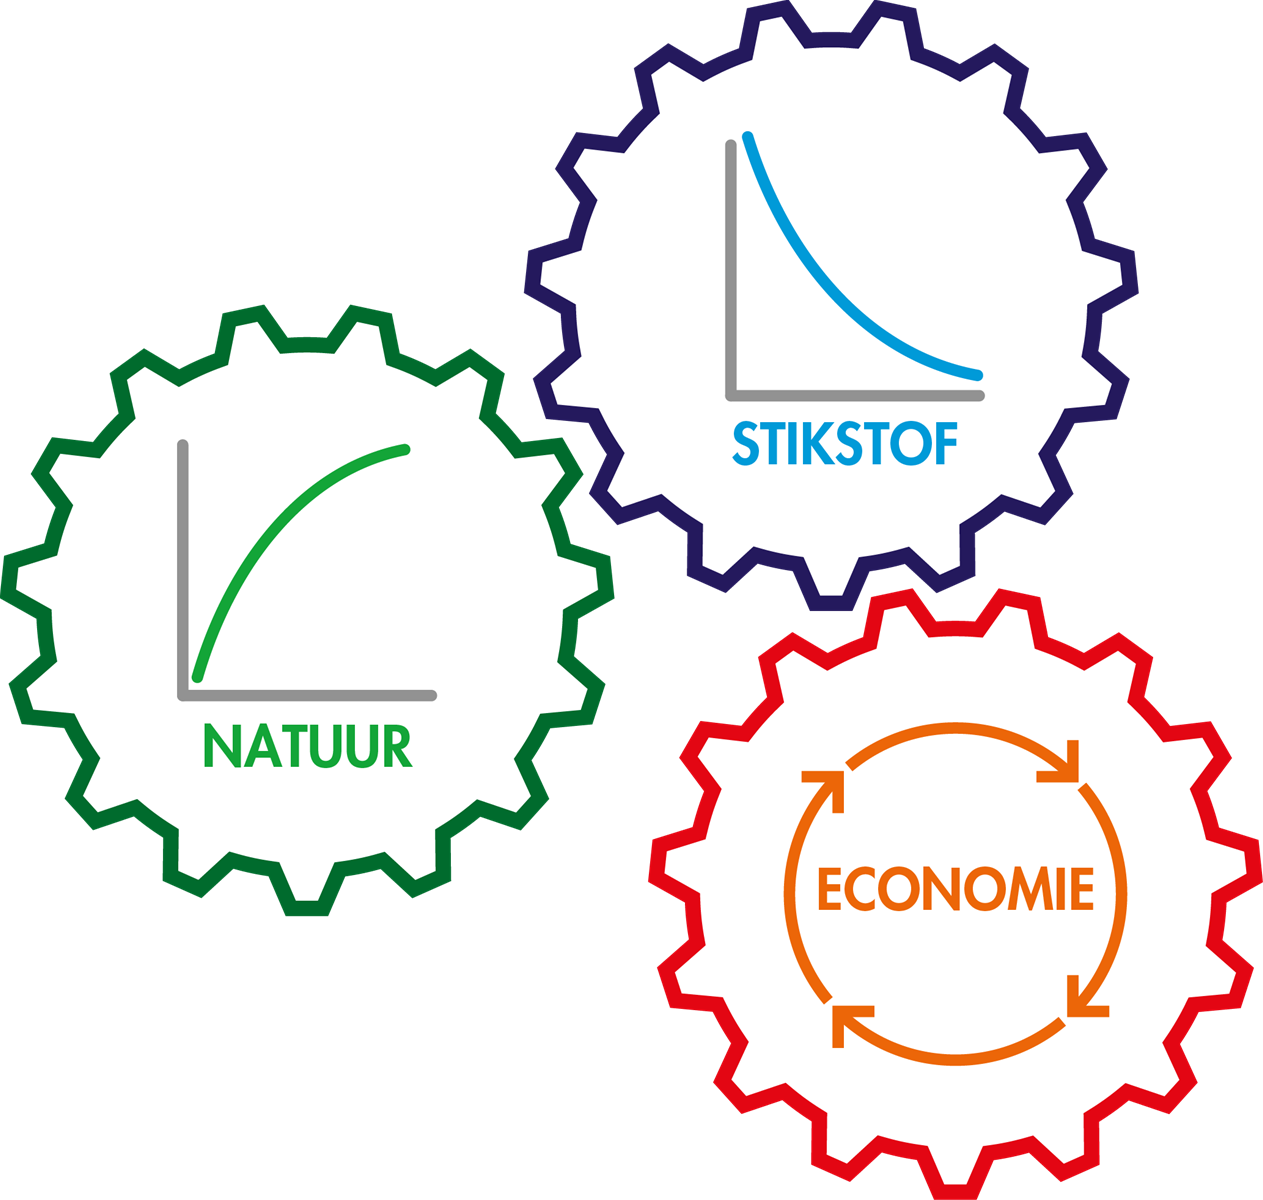 3 tandwielen, één mechanisme: natuurherstel, stikstofreductie en voortgang van de economie